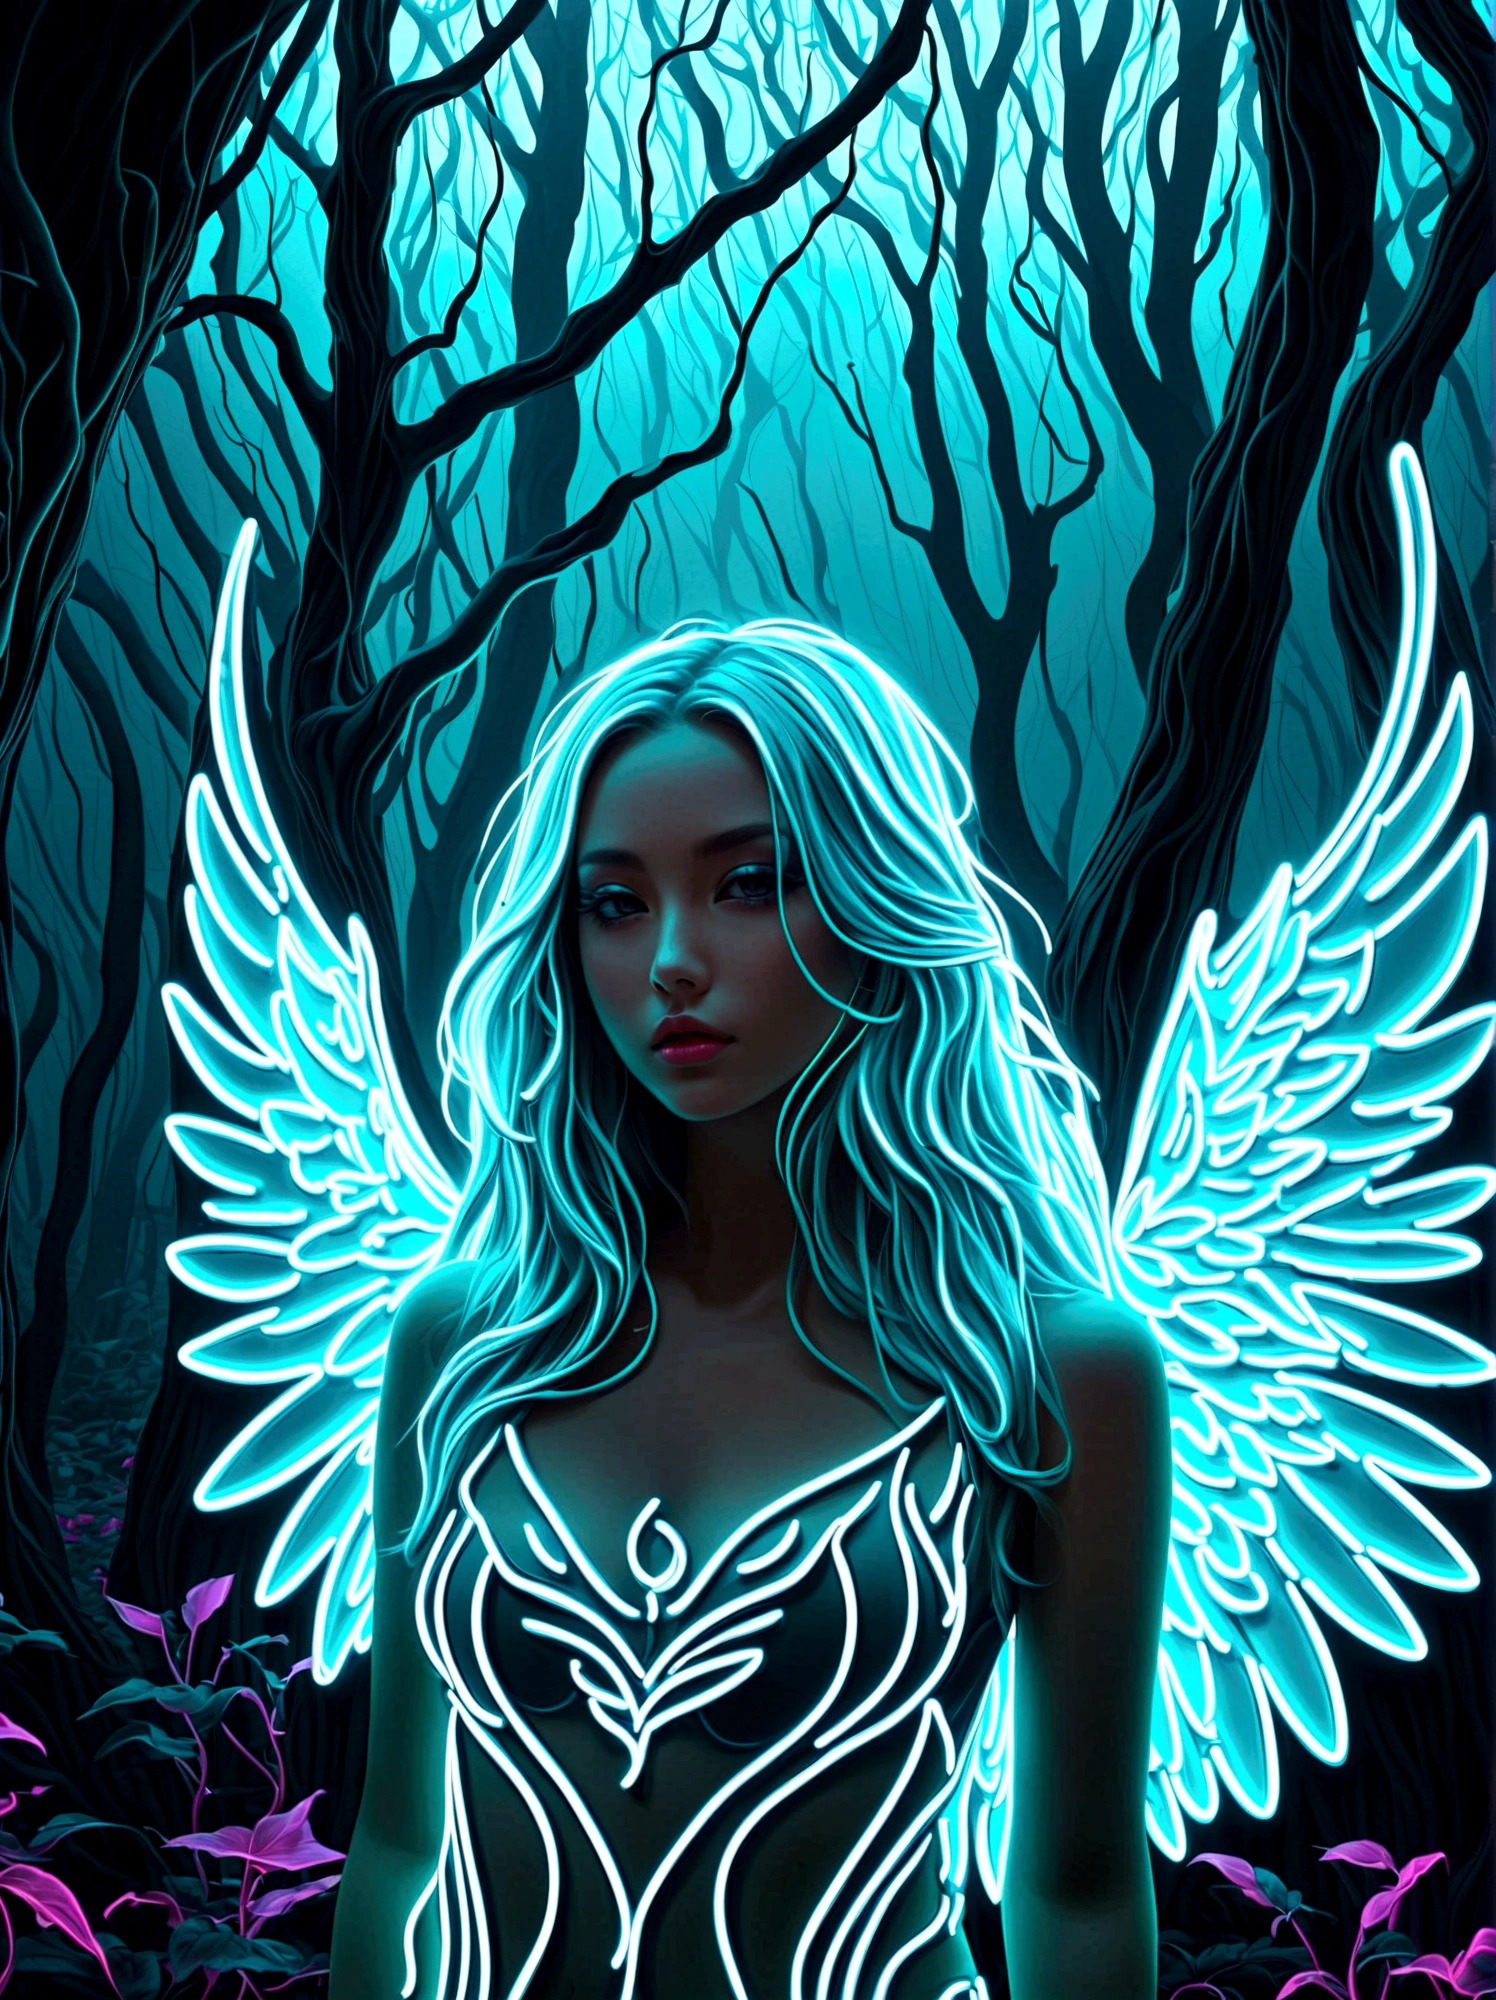 氖，发光的氖, 雾中荒凉神秘的森林，长着白色波浪发的漂亮女孩，站在前面，有翅膀，(翅膀由彩虹色氖轨迹形成:1.3)，超现实主义，幻想，令人惊叹的，想象，全身